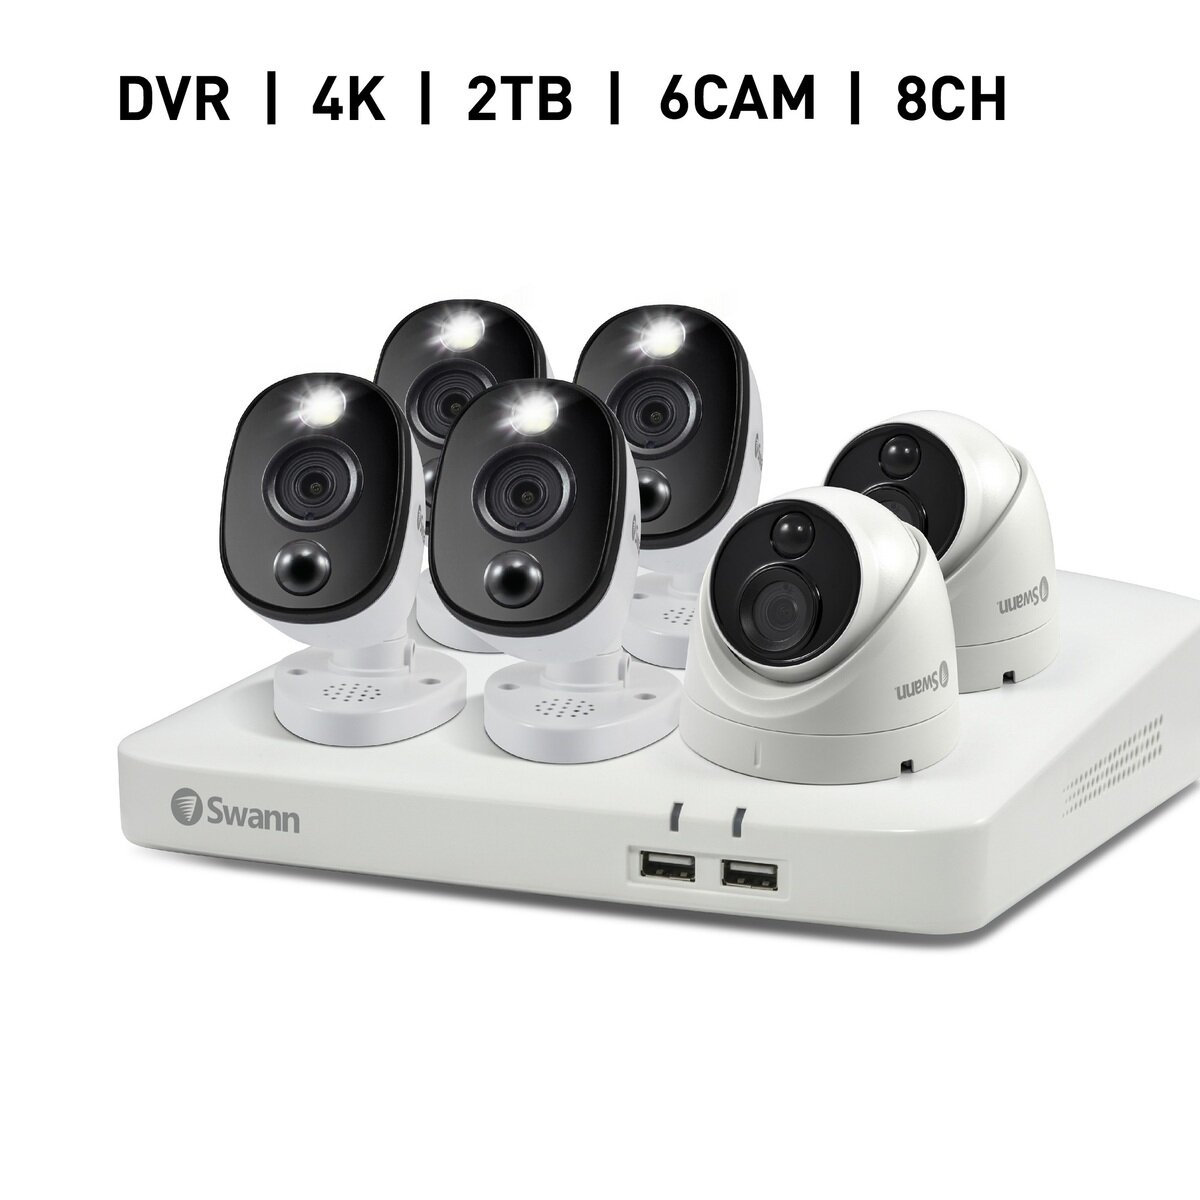 付属品8チャンネル2TBDV【カメラ6台未使用】Swann セキュリティカメラ 8台セット DVRレコーダー